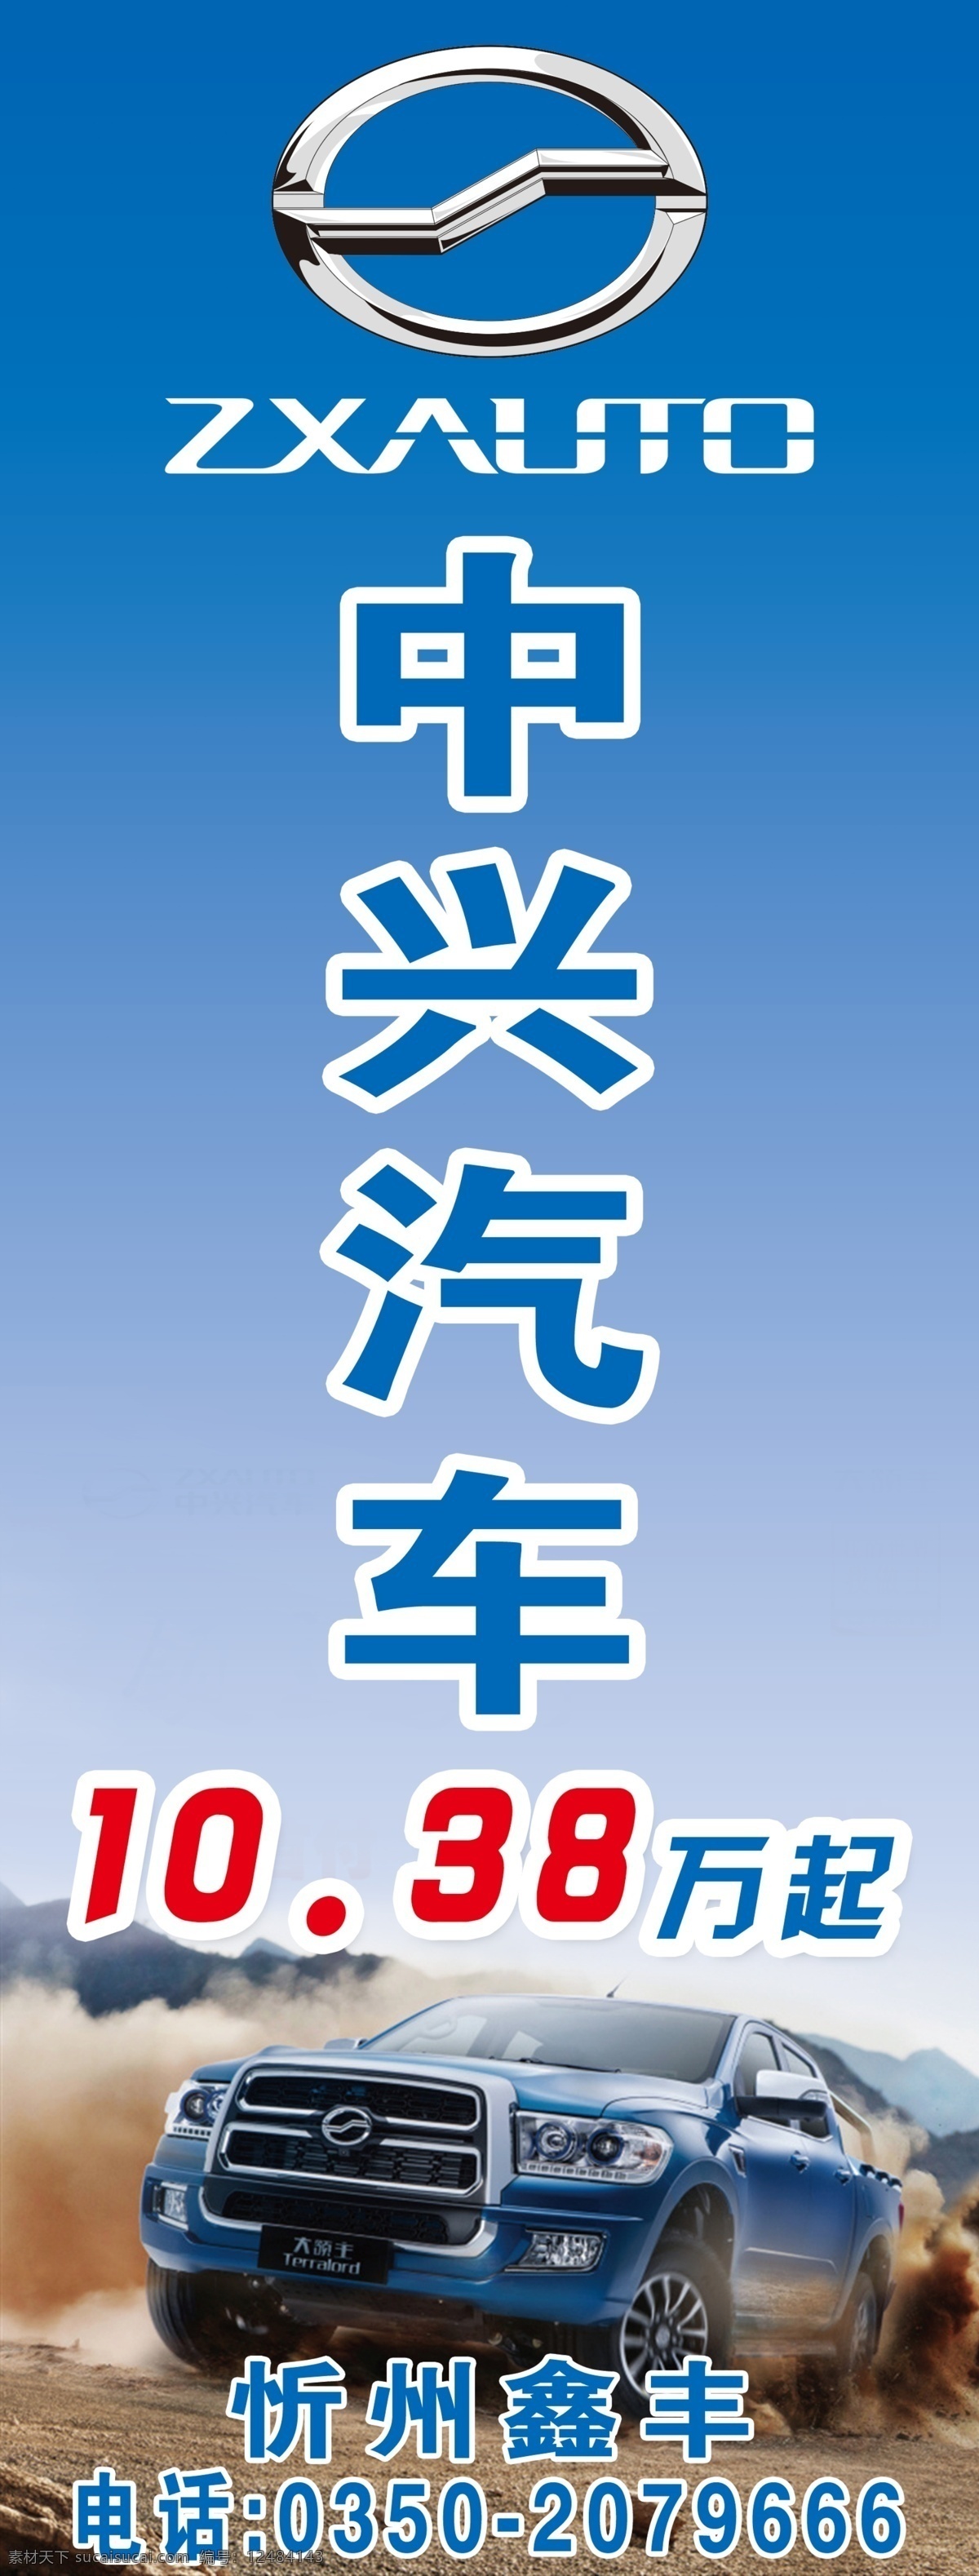 中兴汽车 标志 logo 汽贸公司 4s店 汽贸直营店 汽车 展板模板